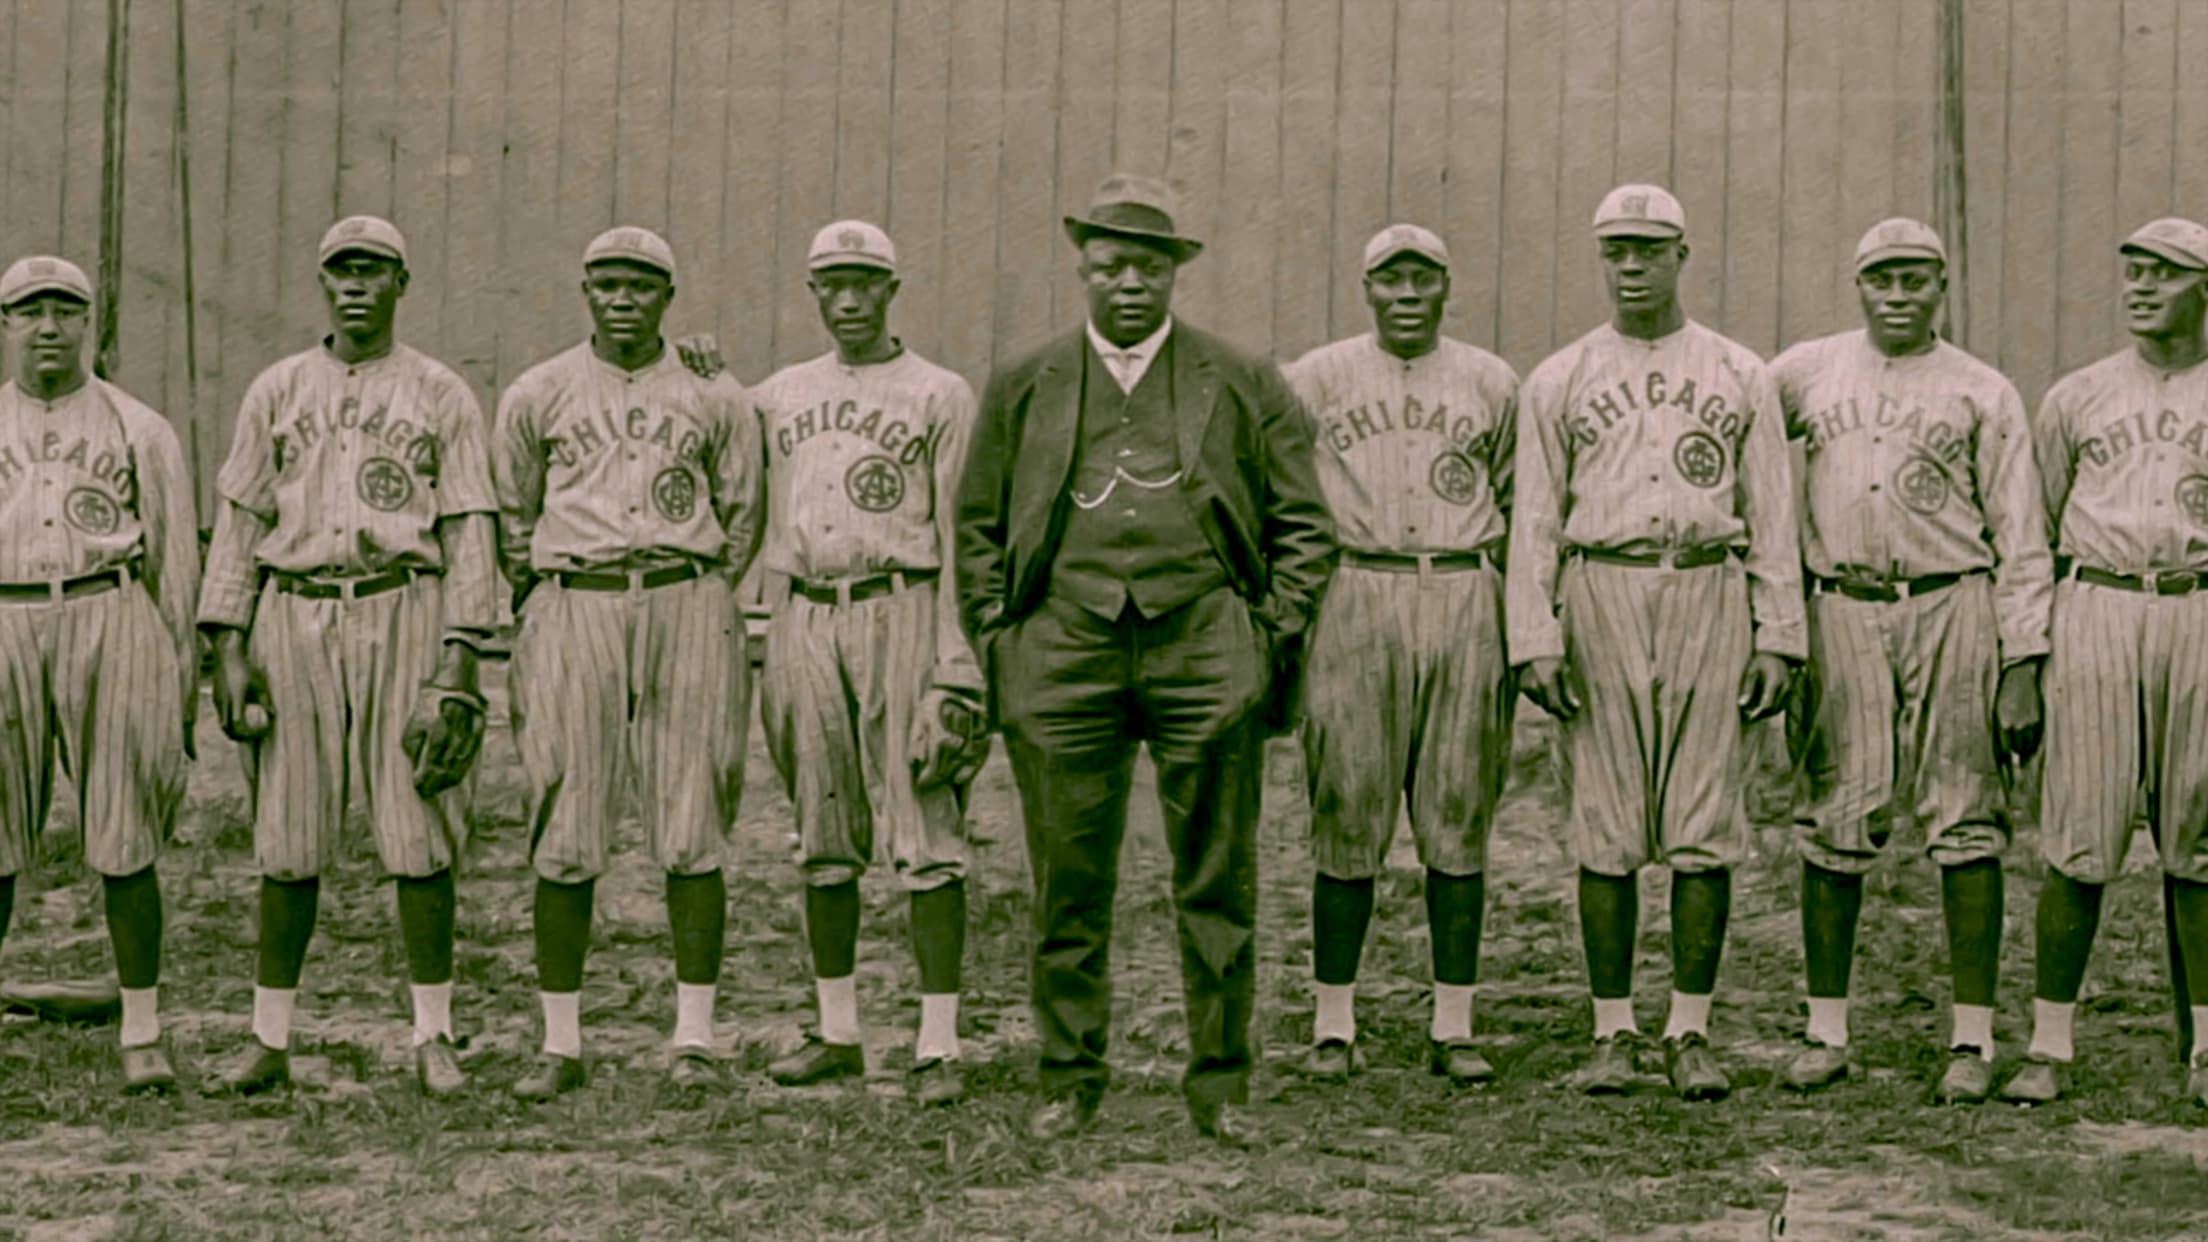 Men's Regular Season Frank Thomas Chicago White Sox MLB Jerseys for sale